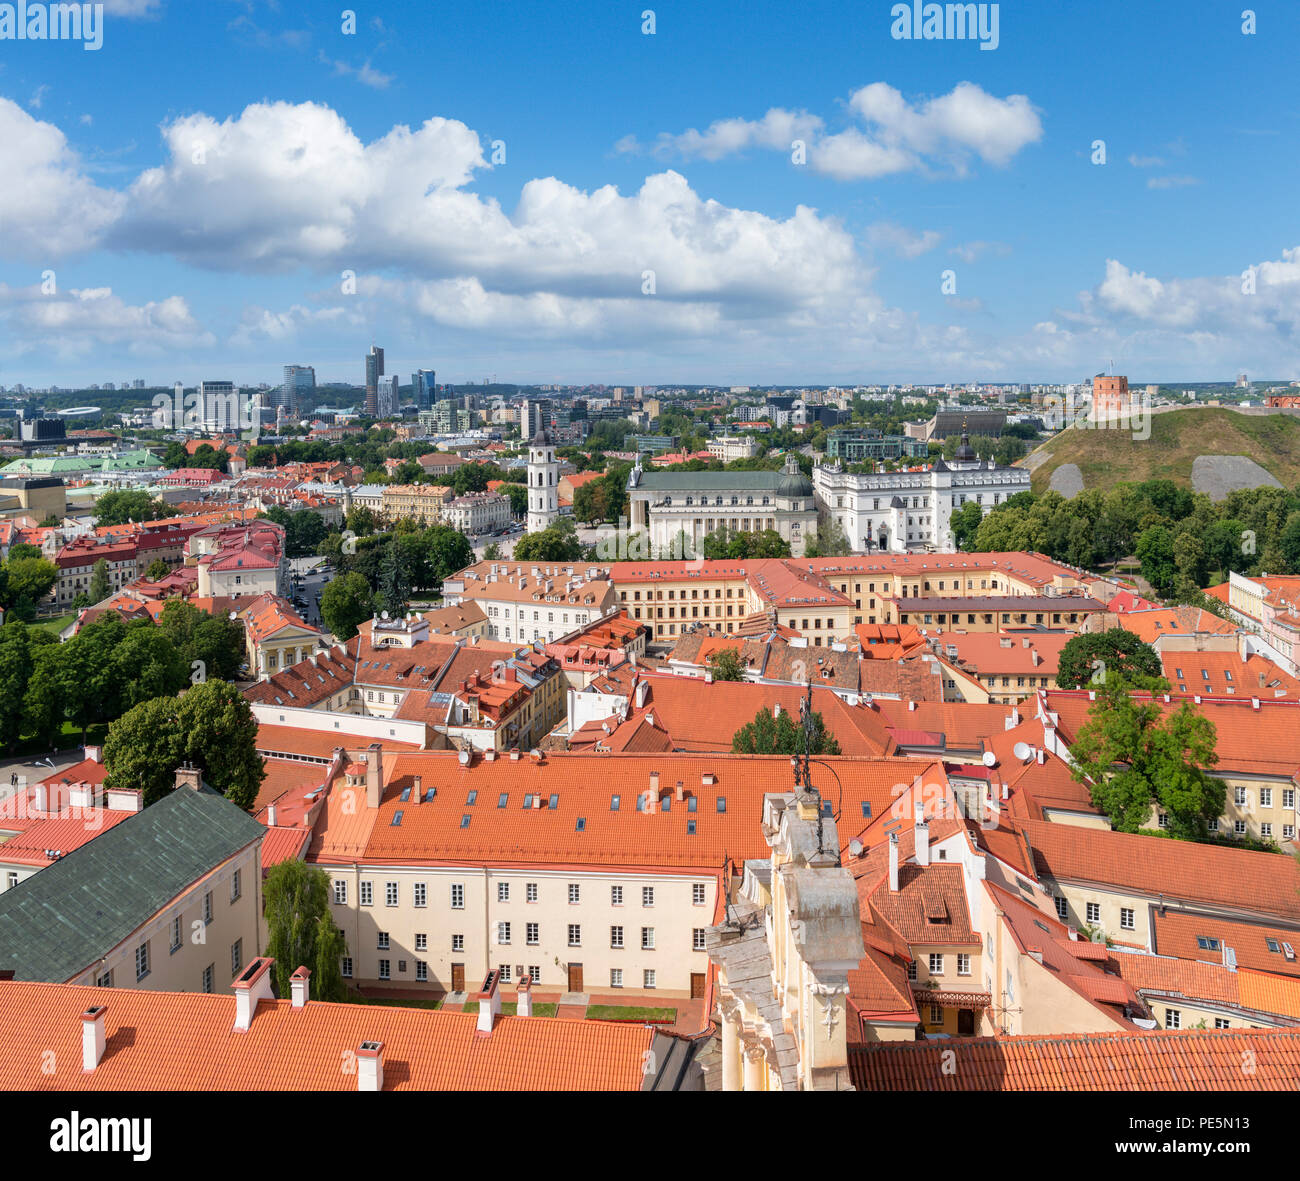 Blick über die Altstadt von St. Johns Glockenturm der Kirche, Blick auf die Kathedrale und Gediminas Hiill, Universität Vilnius, Vilnius, Litauen Stockfoto